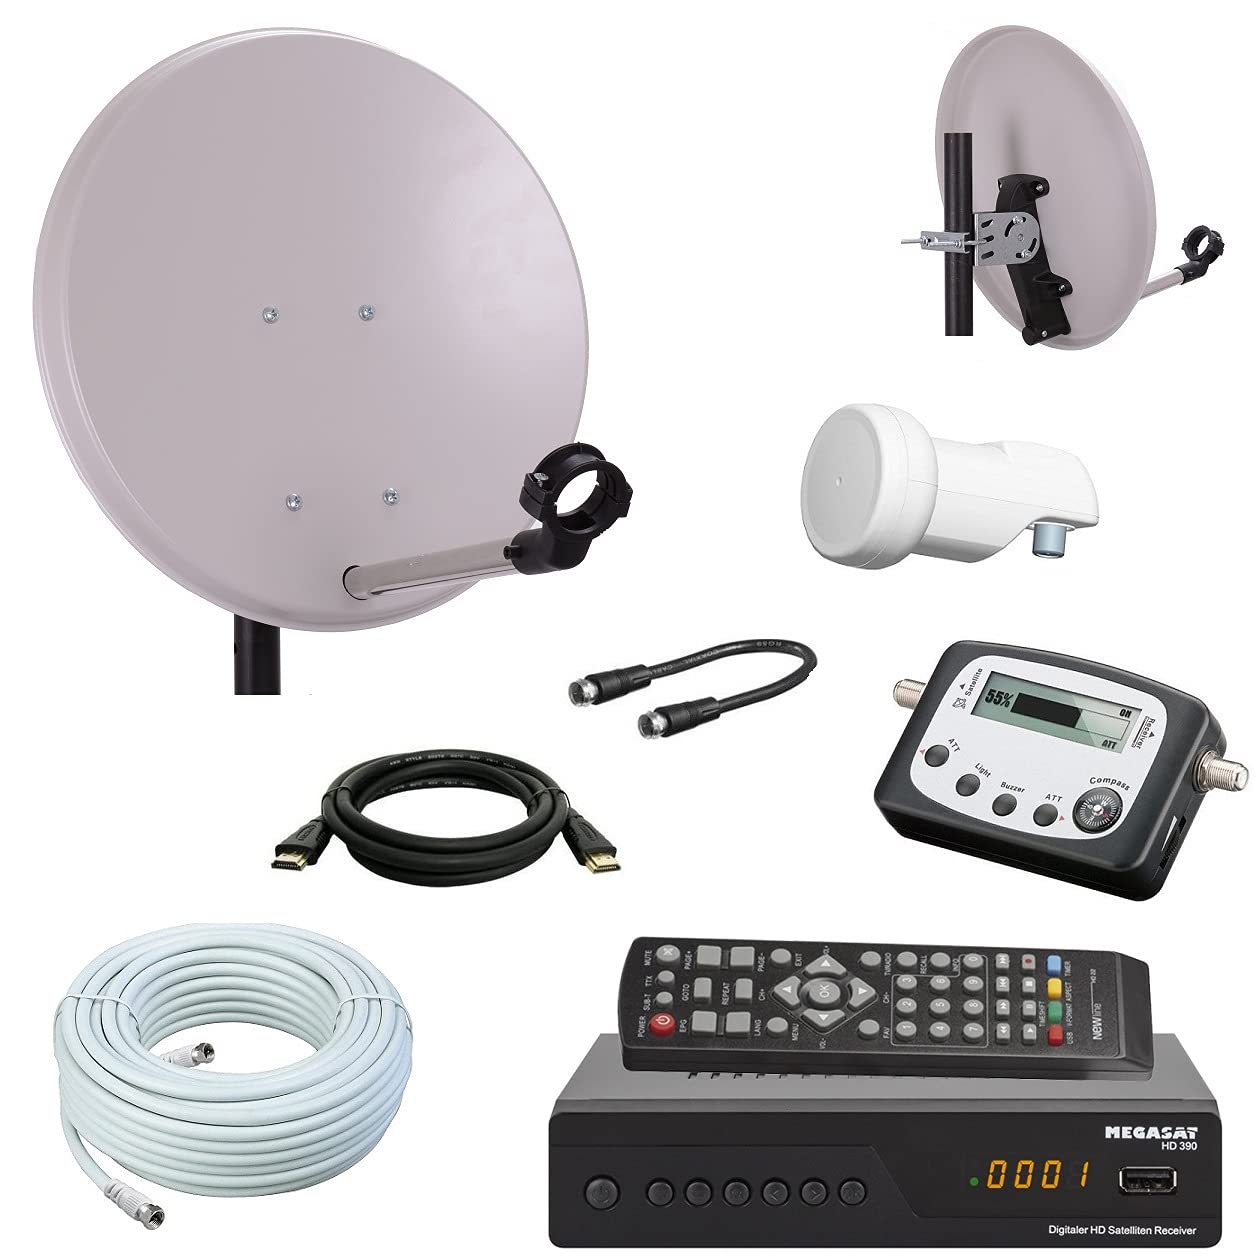 Digital Camping SAT Anlage 40 cm Spiegel + HD Sat Receiver + Digitaler SAT Finder + HD Single LNB + 10m Kabel